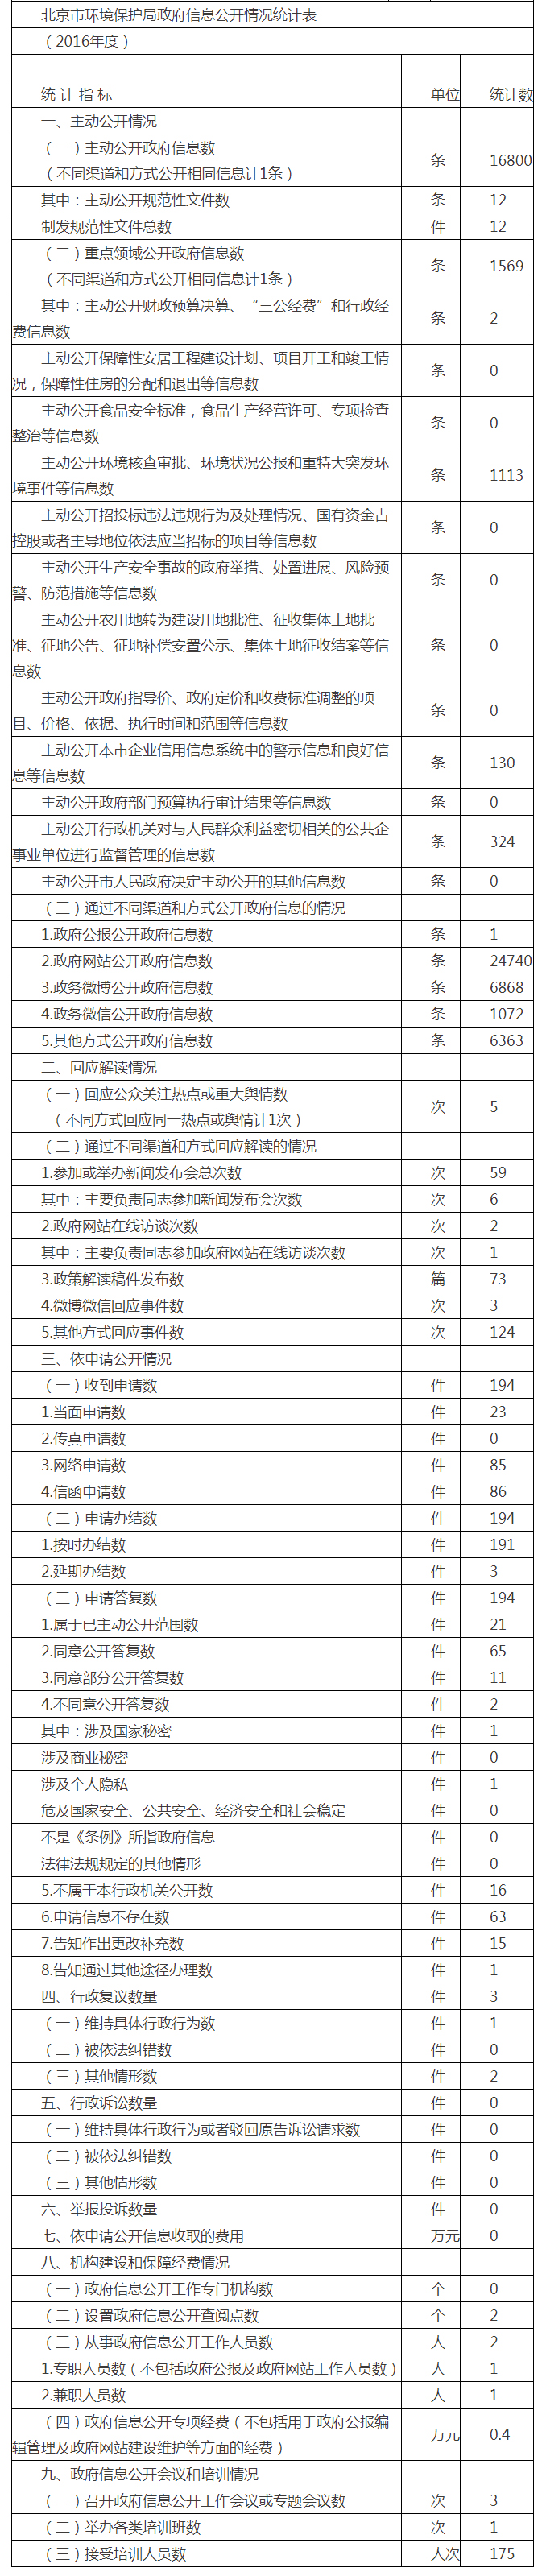 北京市環境保護局政府信息公開情況統計表